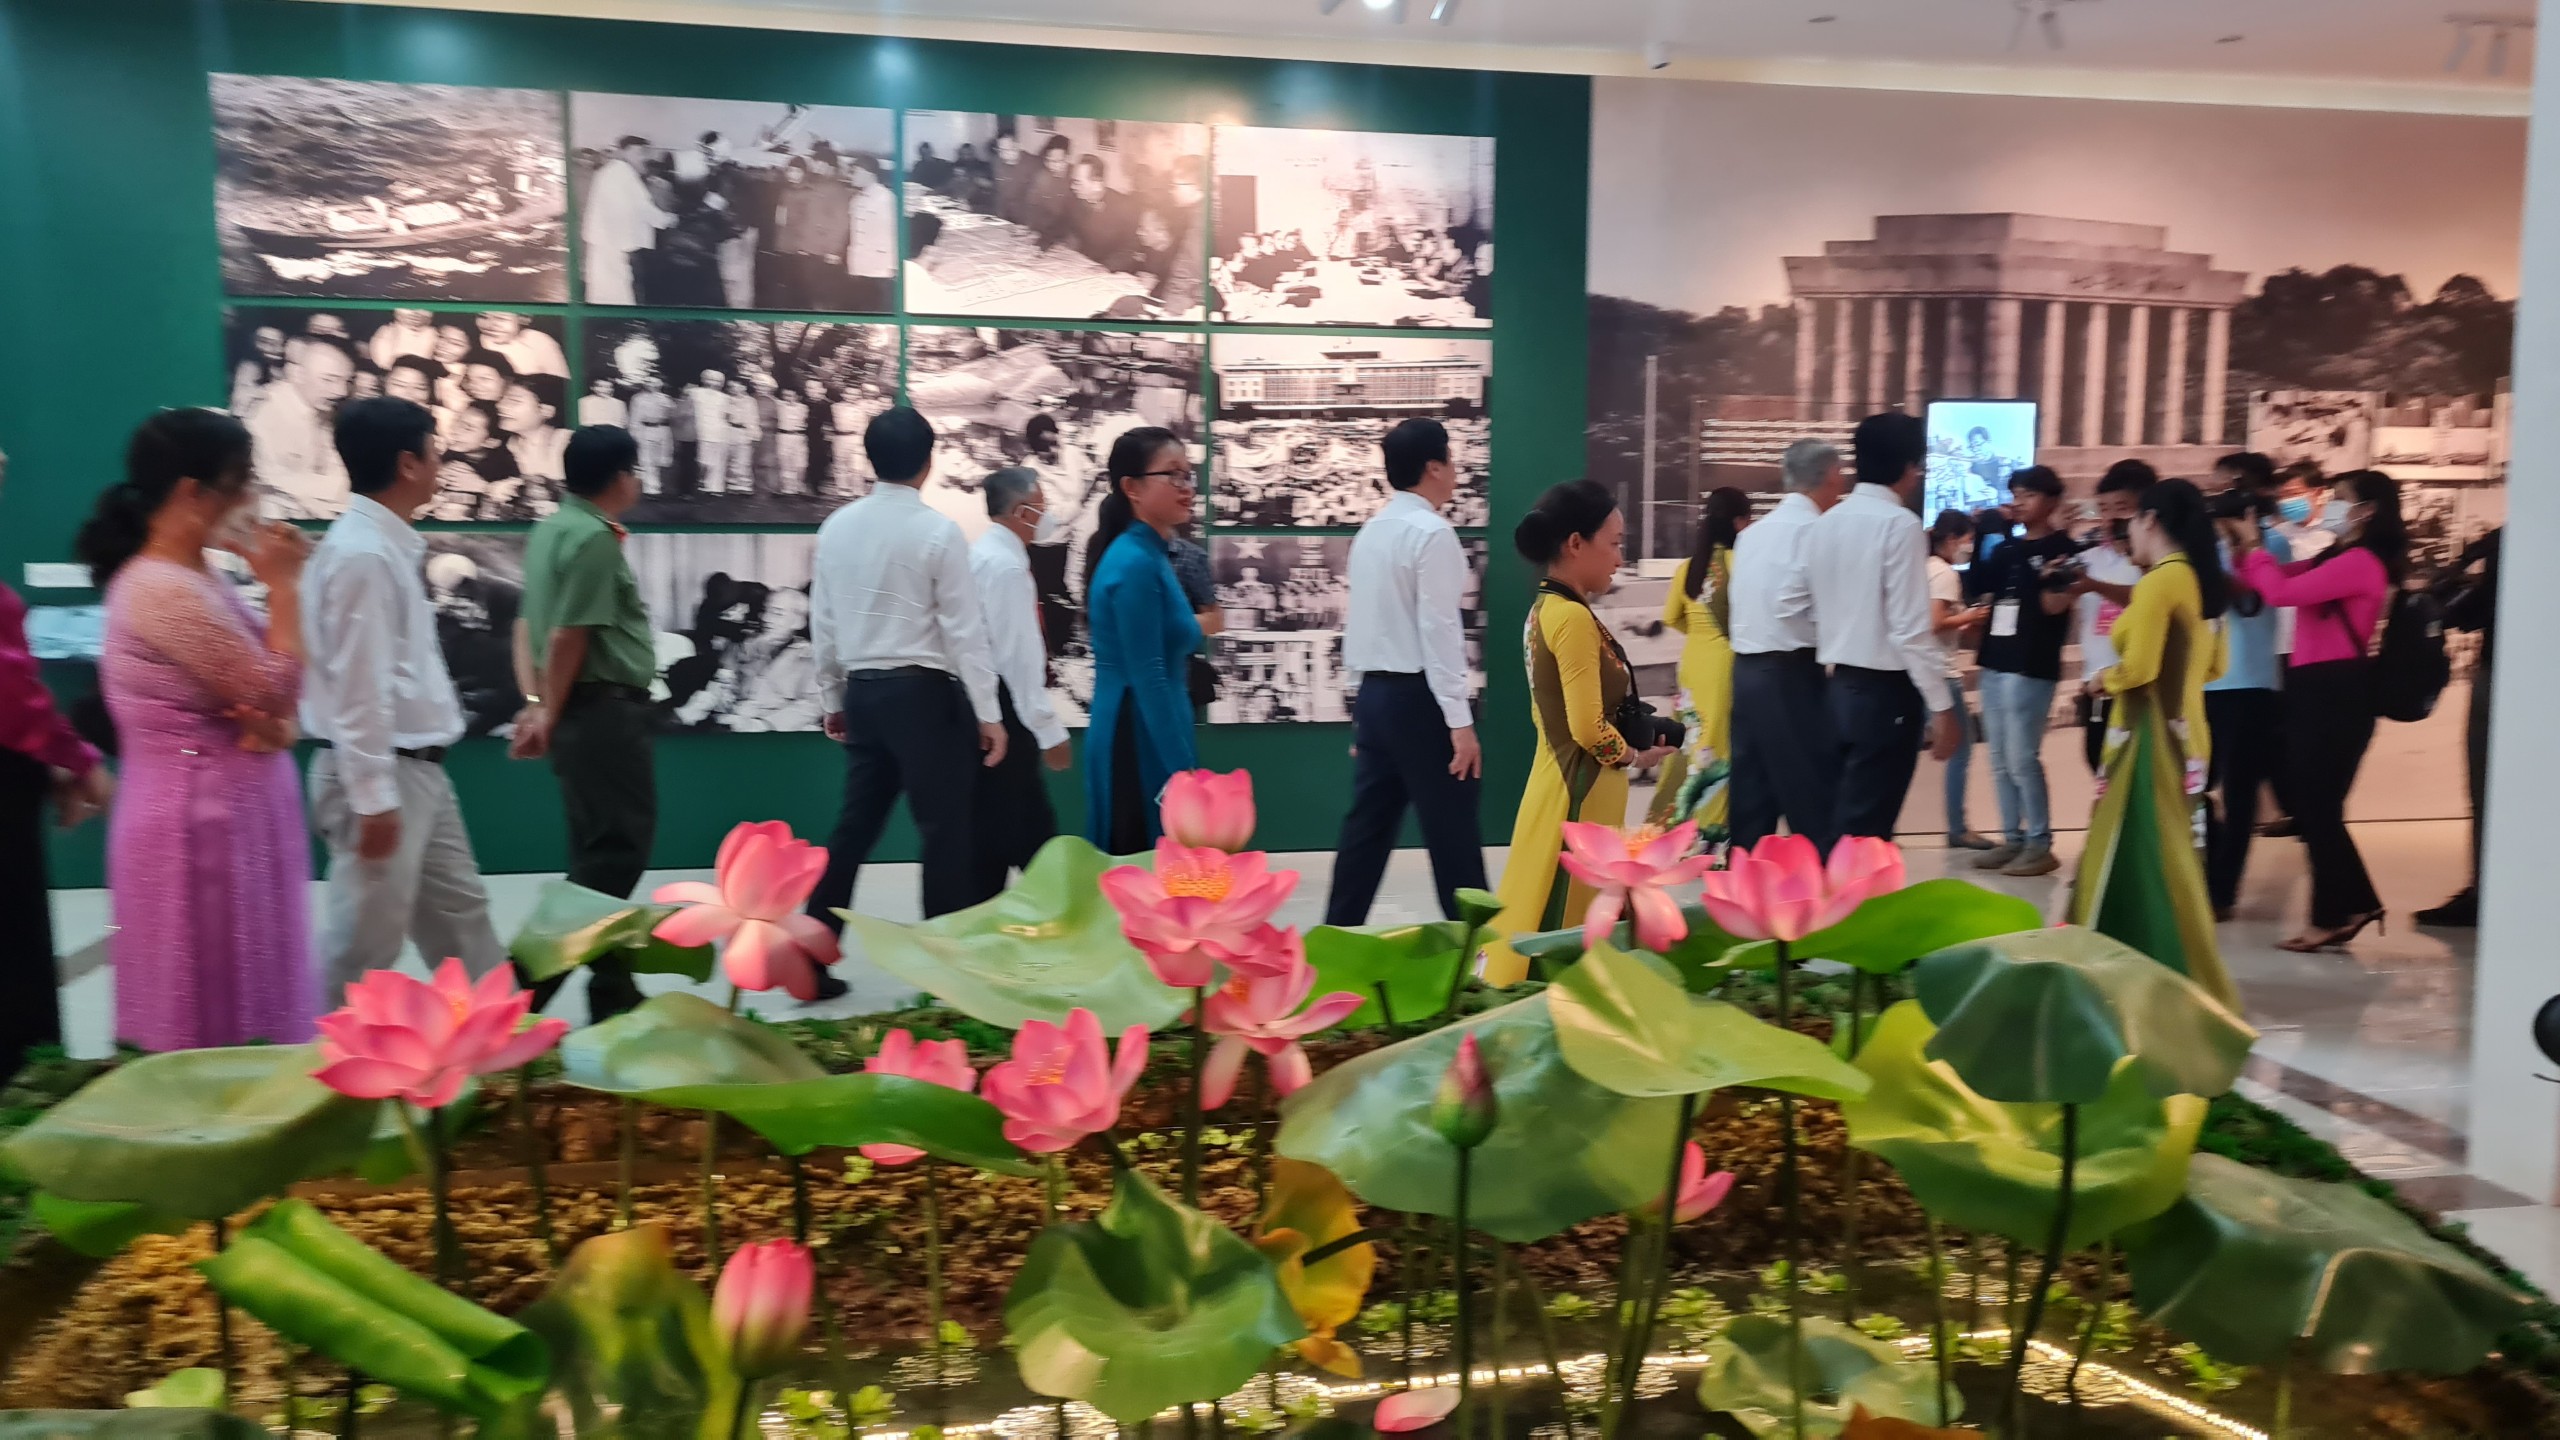 Đây là công trình tưởng nhớ, tri ân, là đóa sen ngát hương của Đảng bộ, nhân dân Đất Sen hồng kính dâng nhân Kỷ niệm 132 năm ngày sinh của Chủ tịch Hồ Chi Minh.